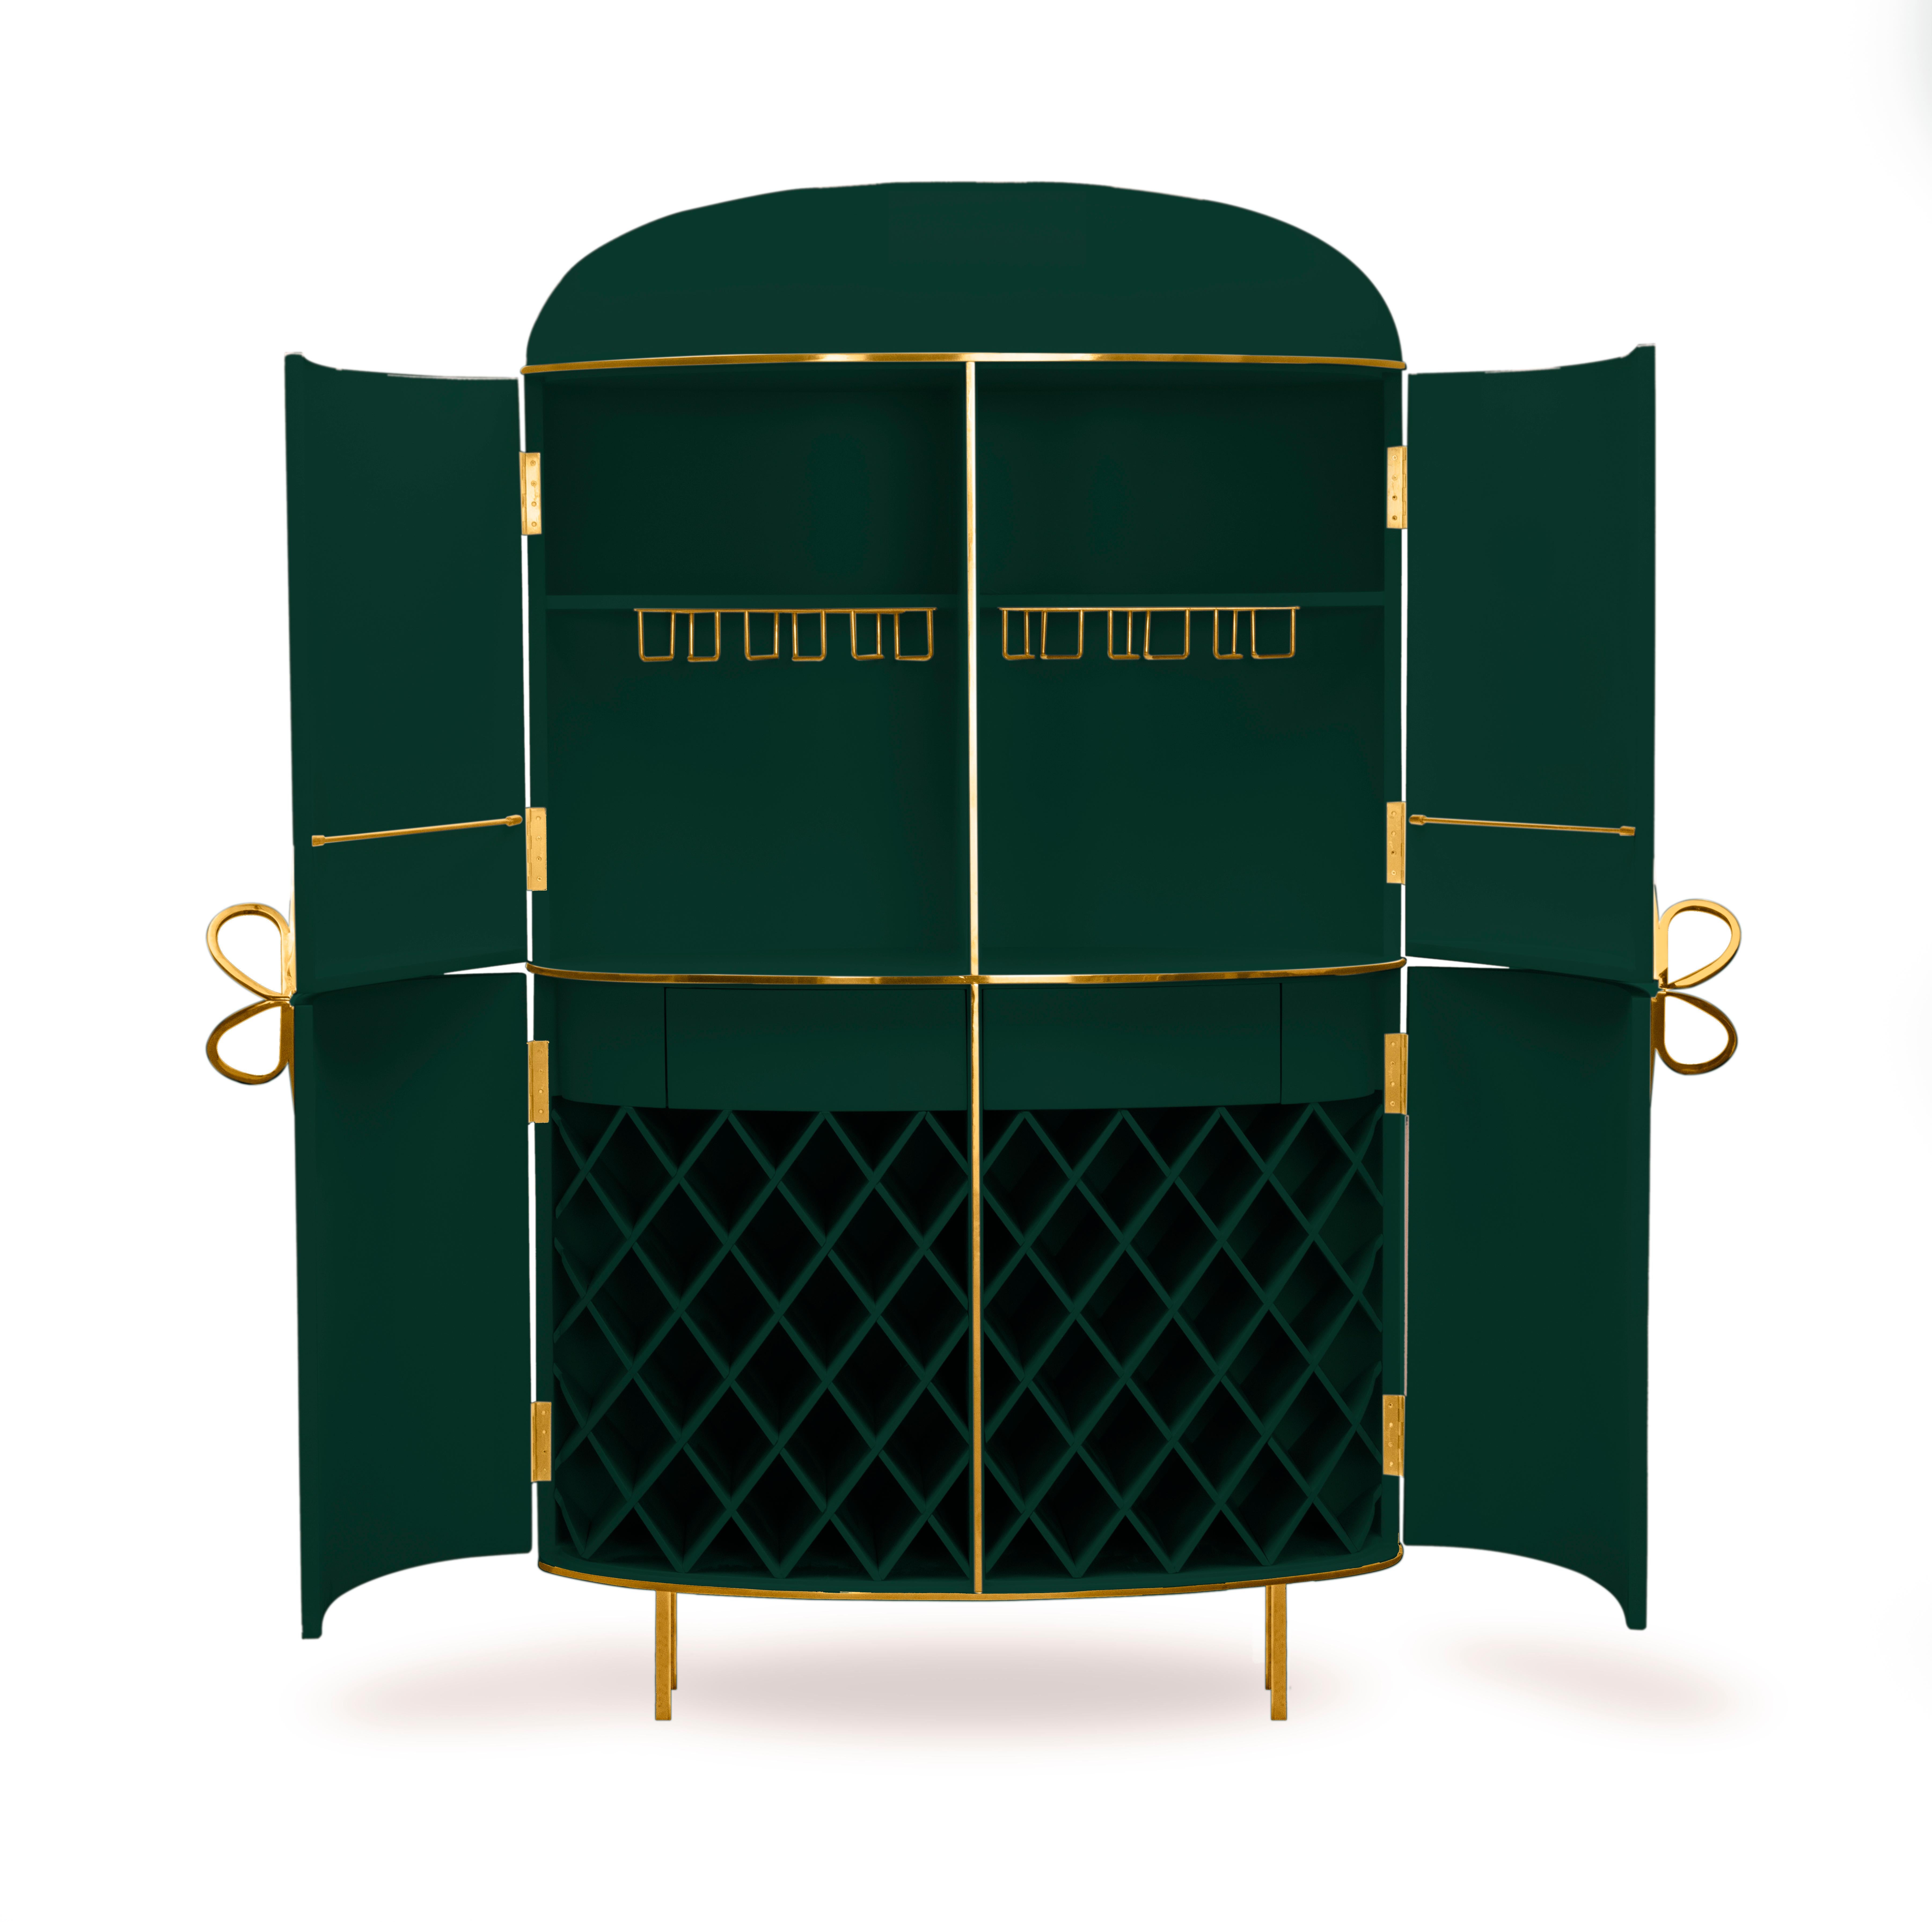 88 Secrets Green Bar Cabinet with Gold Trims von Nika Zupanc ist ein satter, tiefgrüner Barschrank mit sinnlichen, femininen Linien und luxuriösen Metallverzierungen in Gold. Ein Blickfang in jedem Innenraum! 

Nika Zupanc, eine auffallend